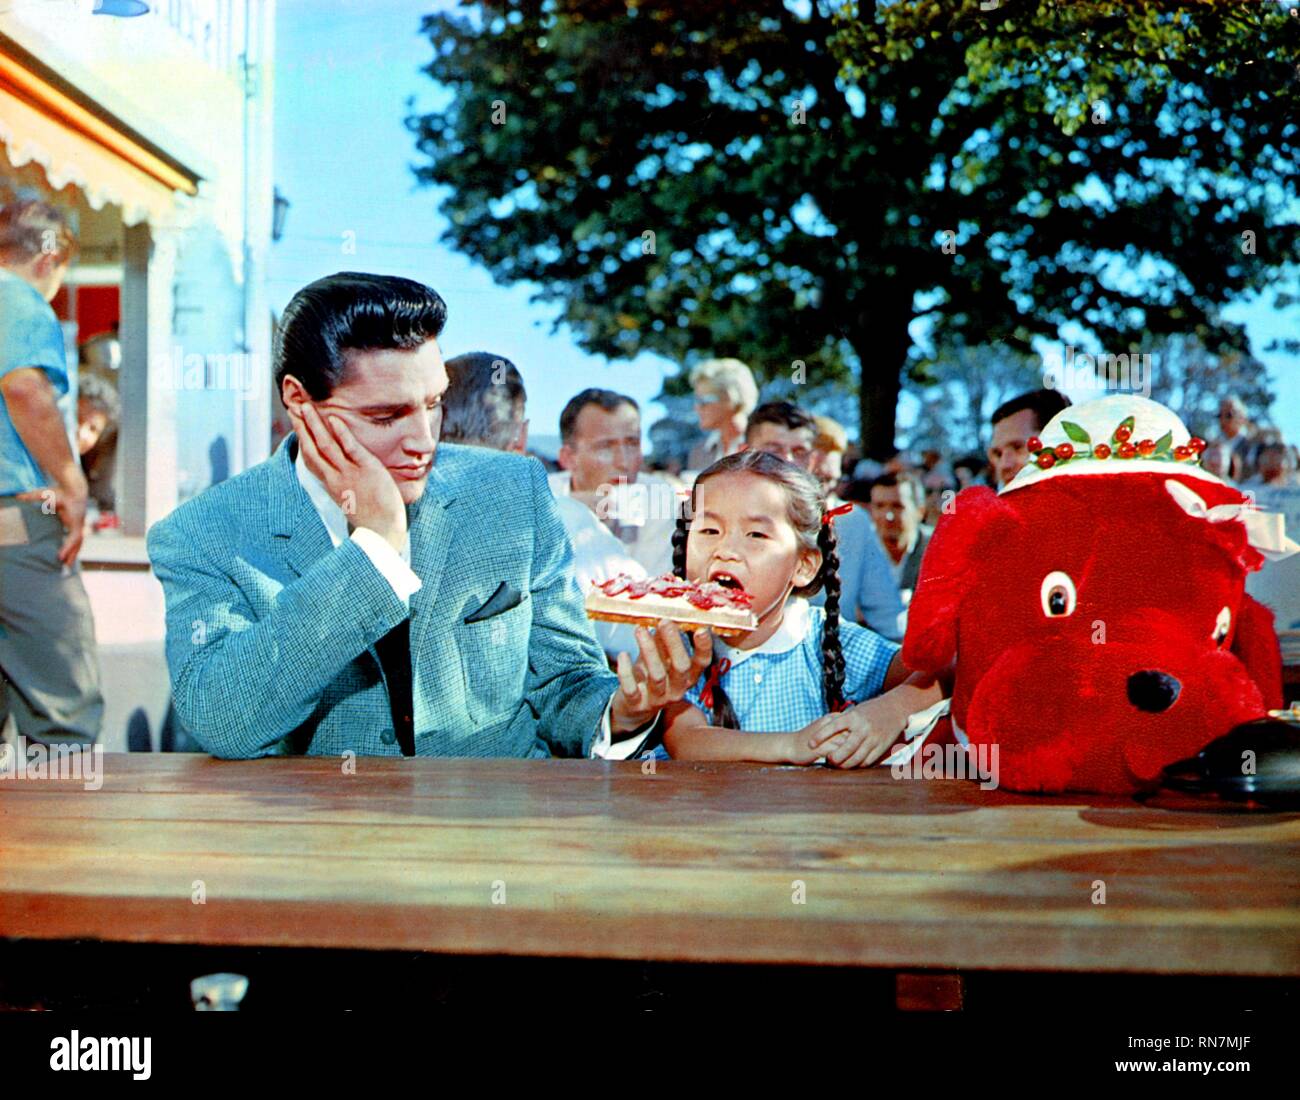 PRESLEY, TIU, ES GESCHAH AN DER WELT DER MESSE 1963 Stockfoto